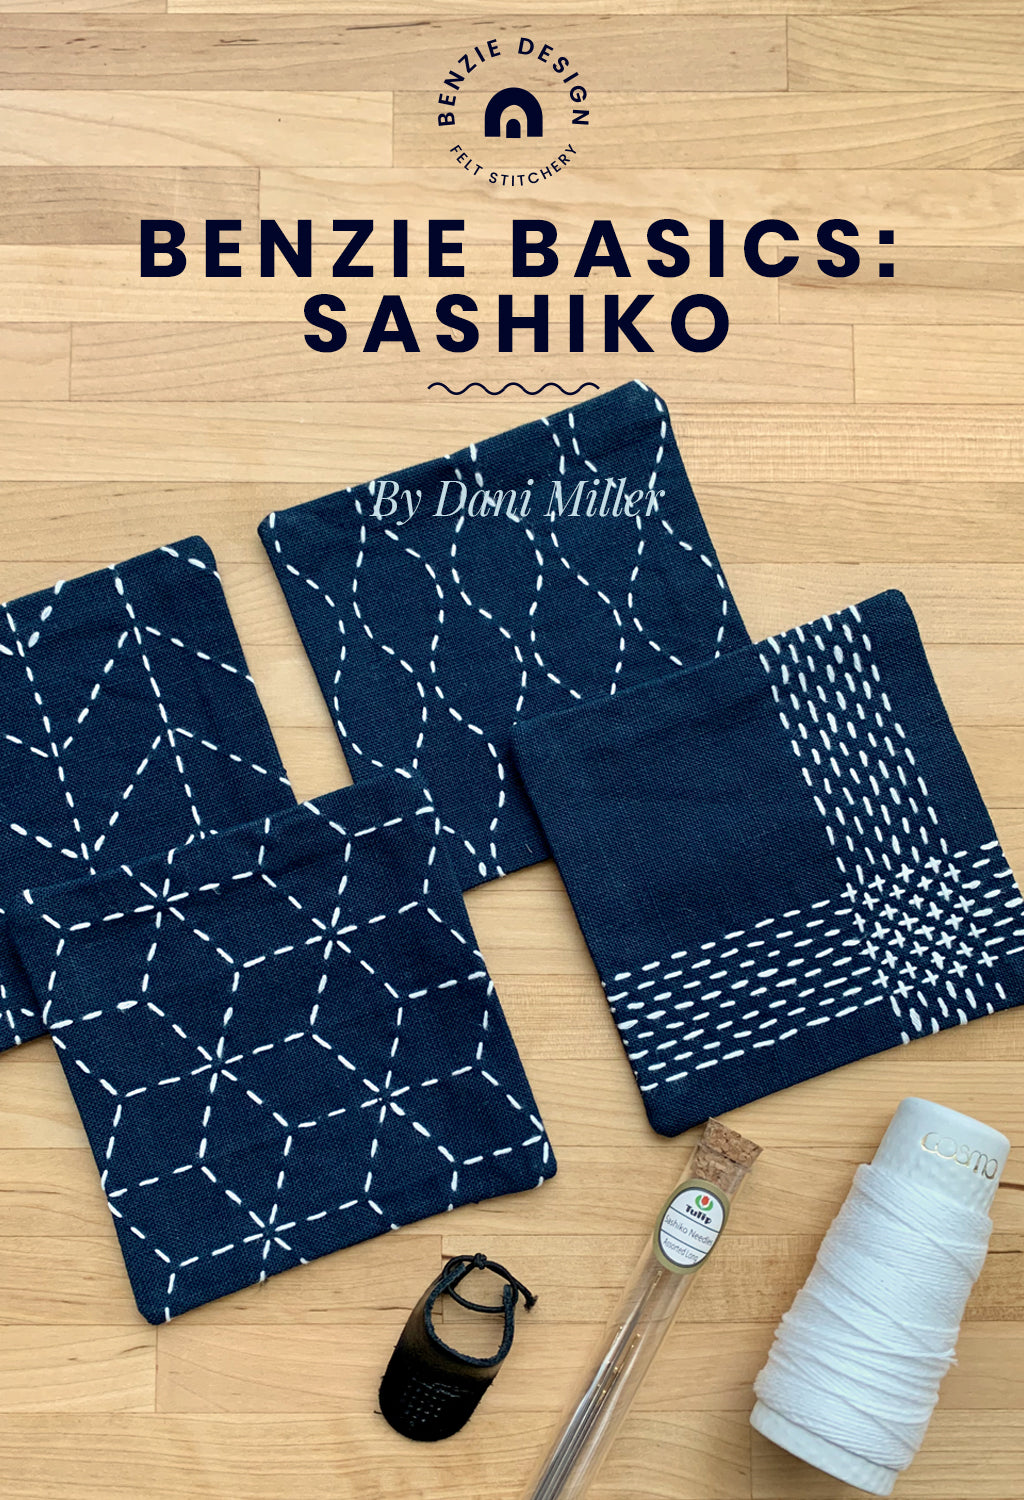 Benzie Basics: Sashiko – Benzie Design